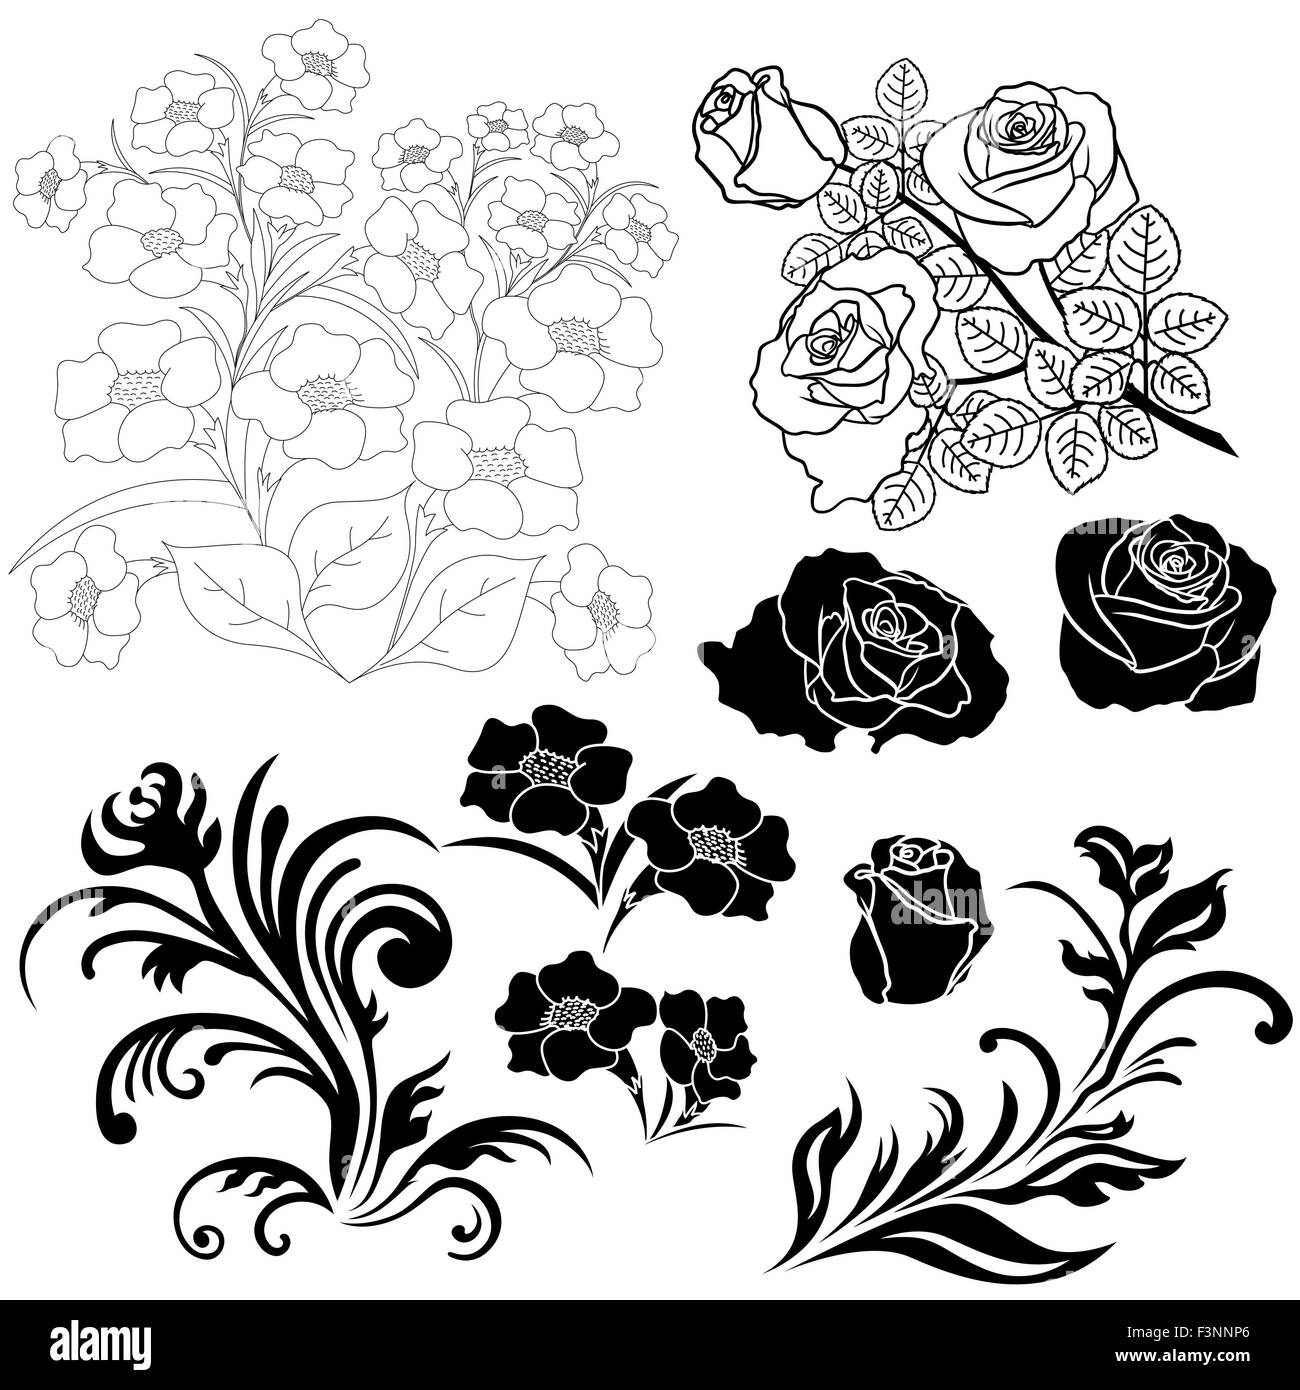 Ensemble d'éléments floraux isolés pour la conception d'illustration vectorielle, dessin à la main Illustration de Vecteur